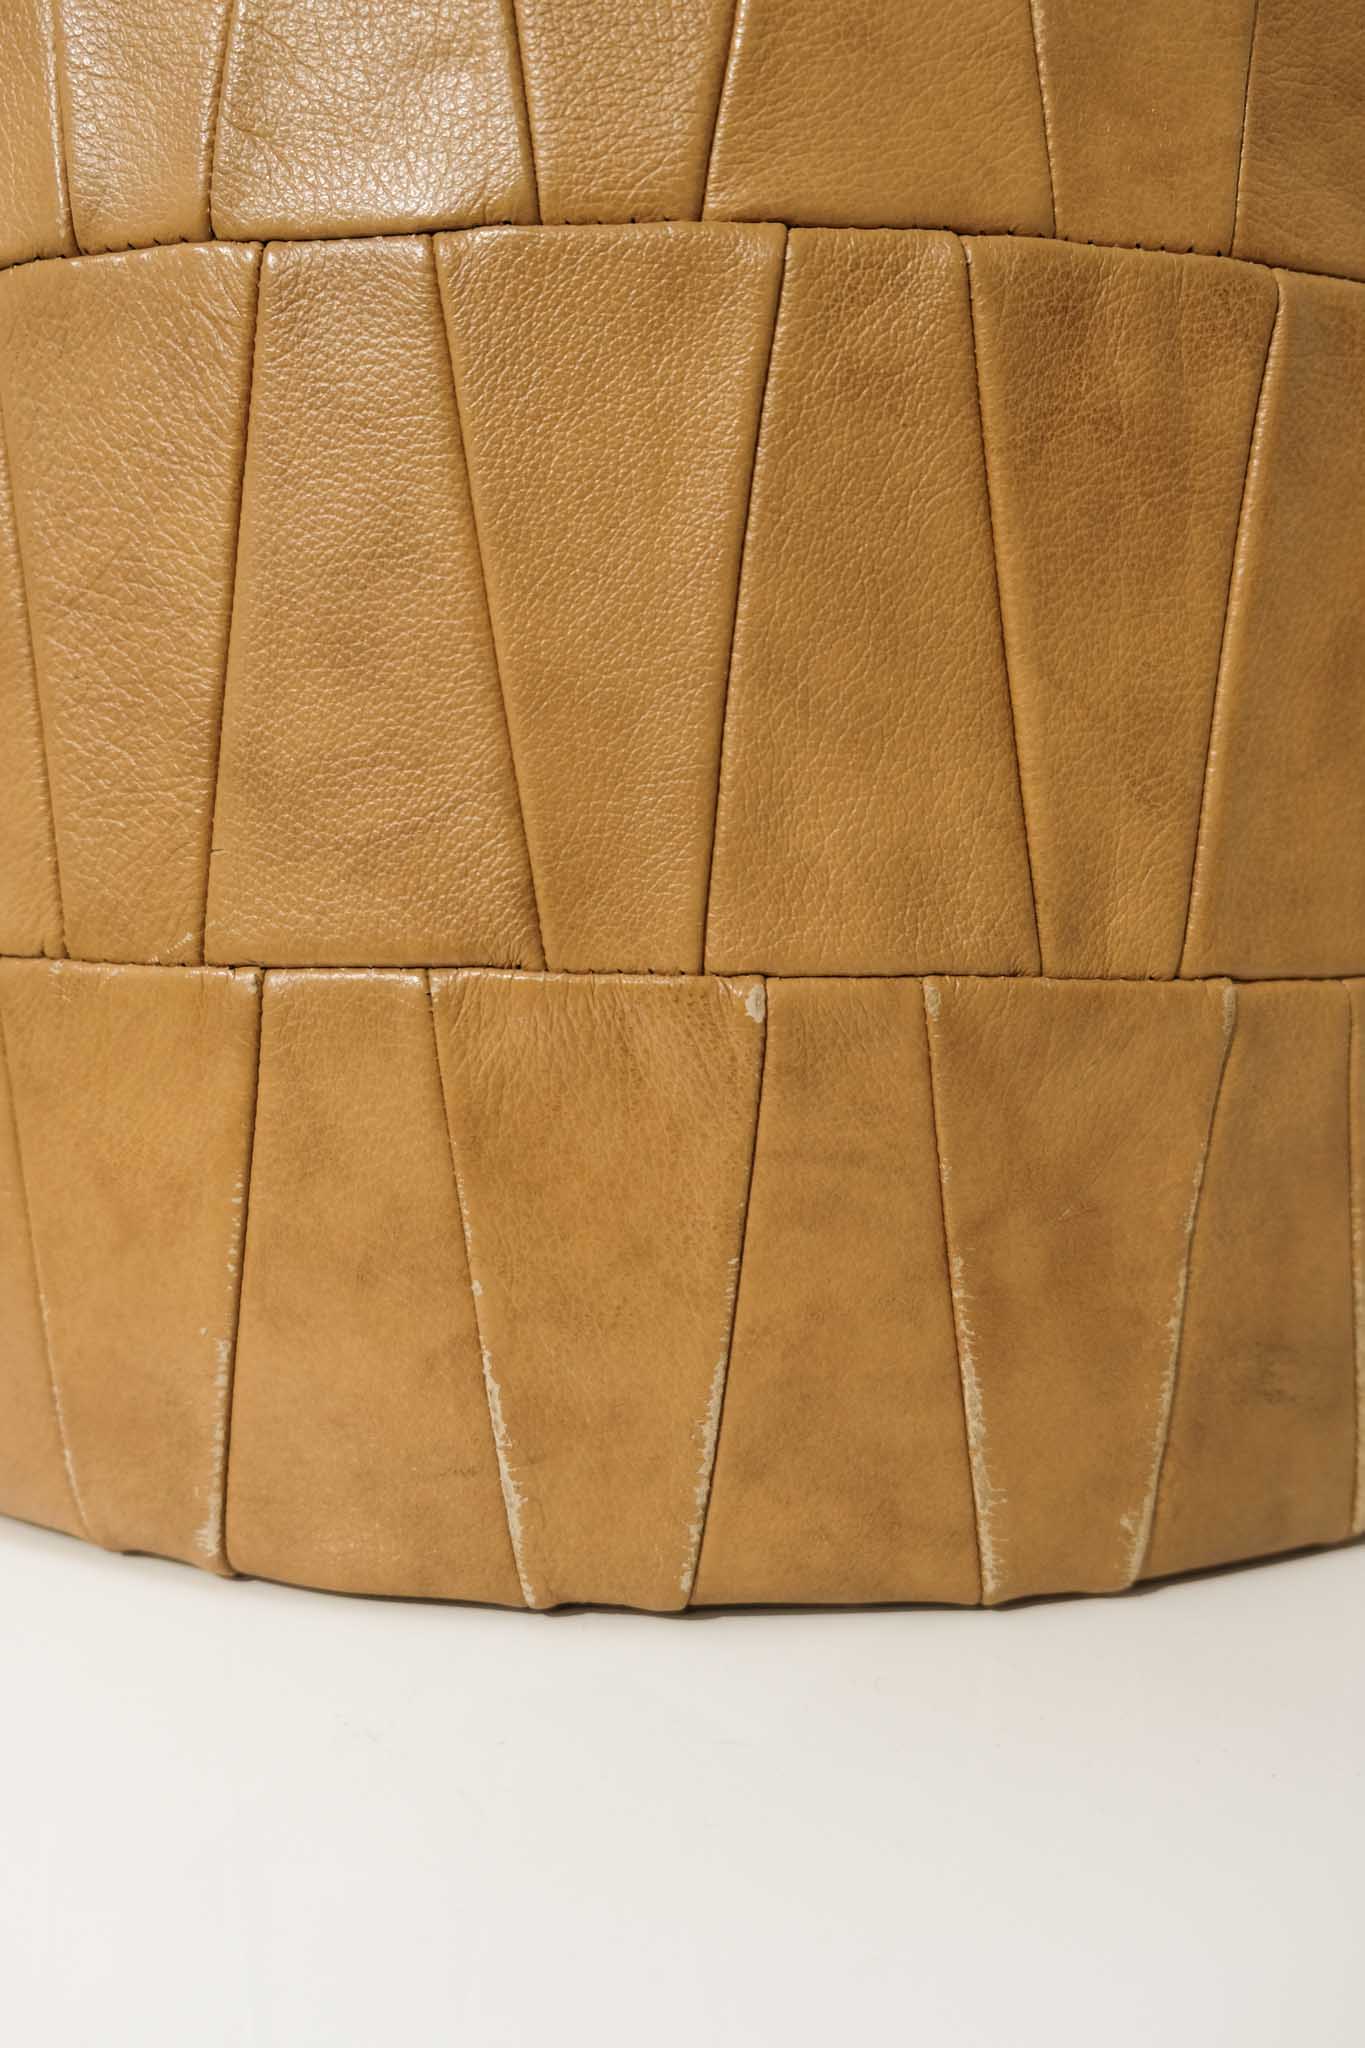 De Sede Patchwork Leather Circle Ottoman